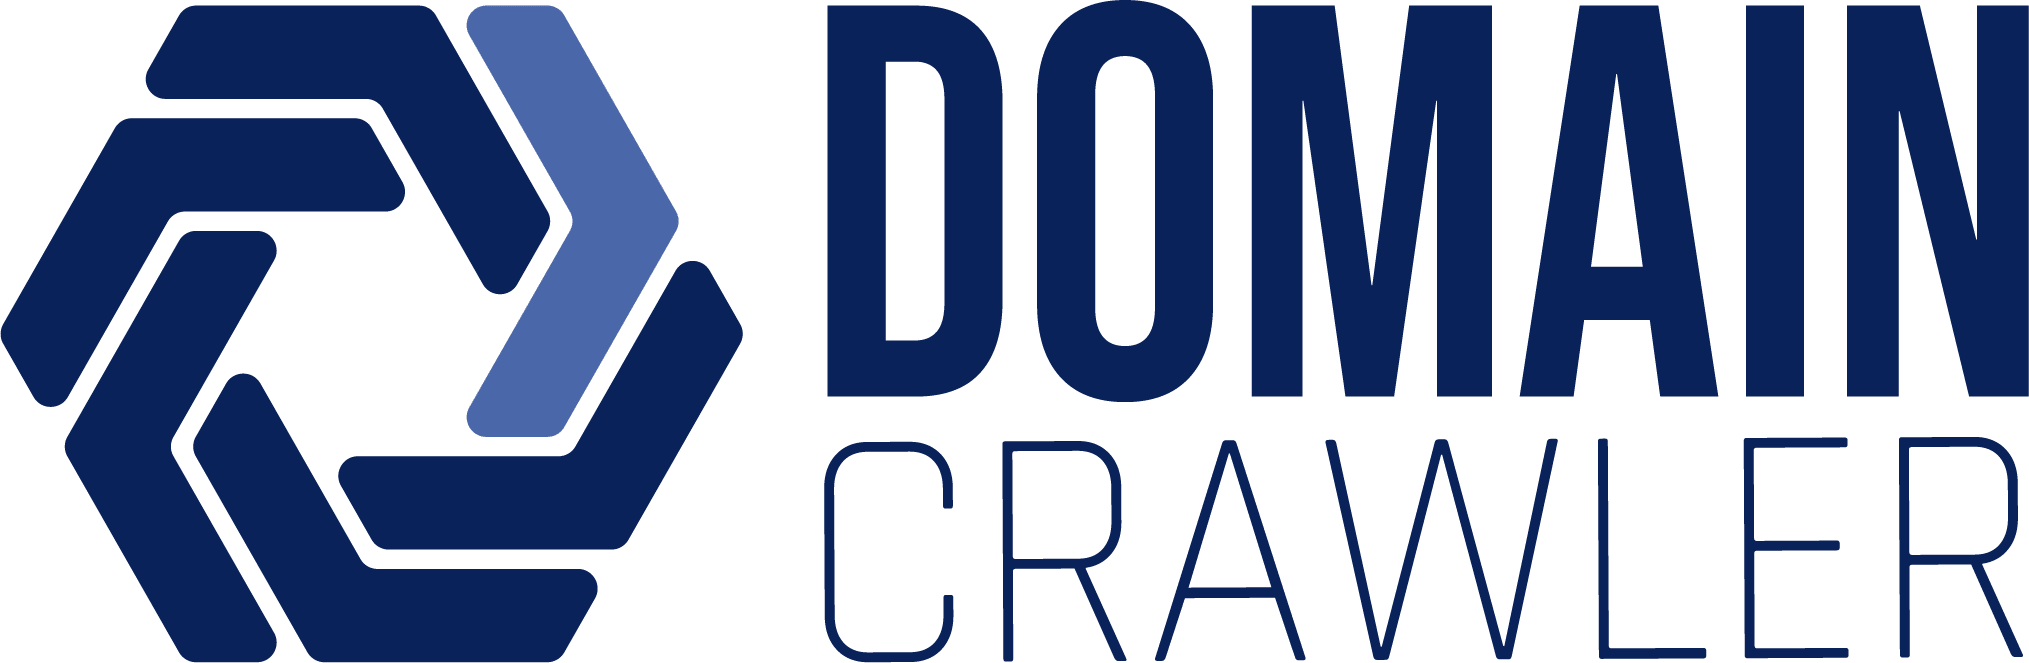 Rebranding_DomainCrawler_logo option 2